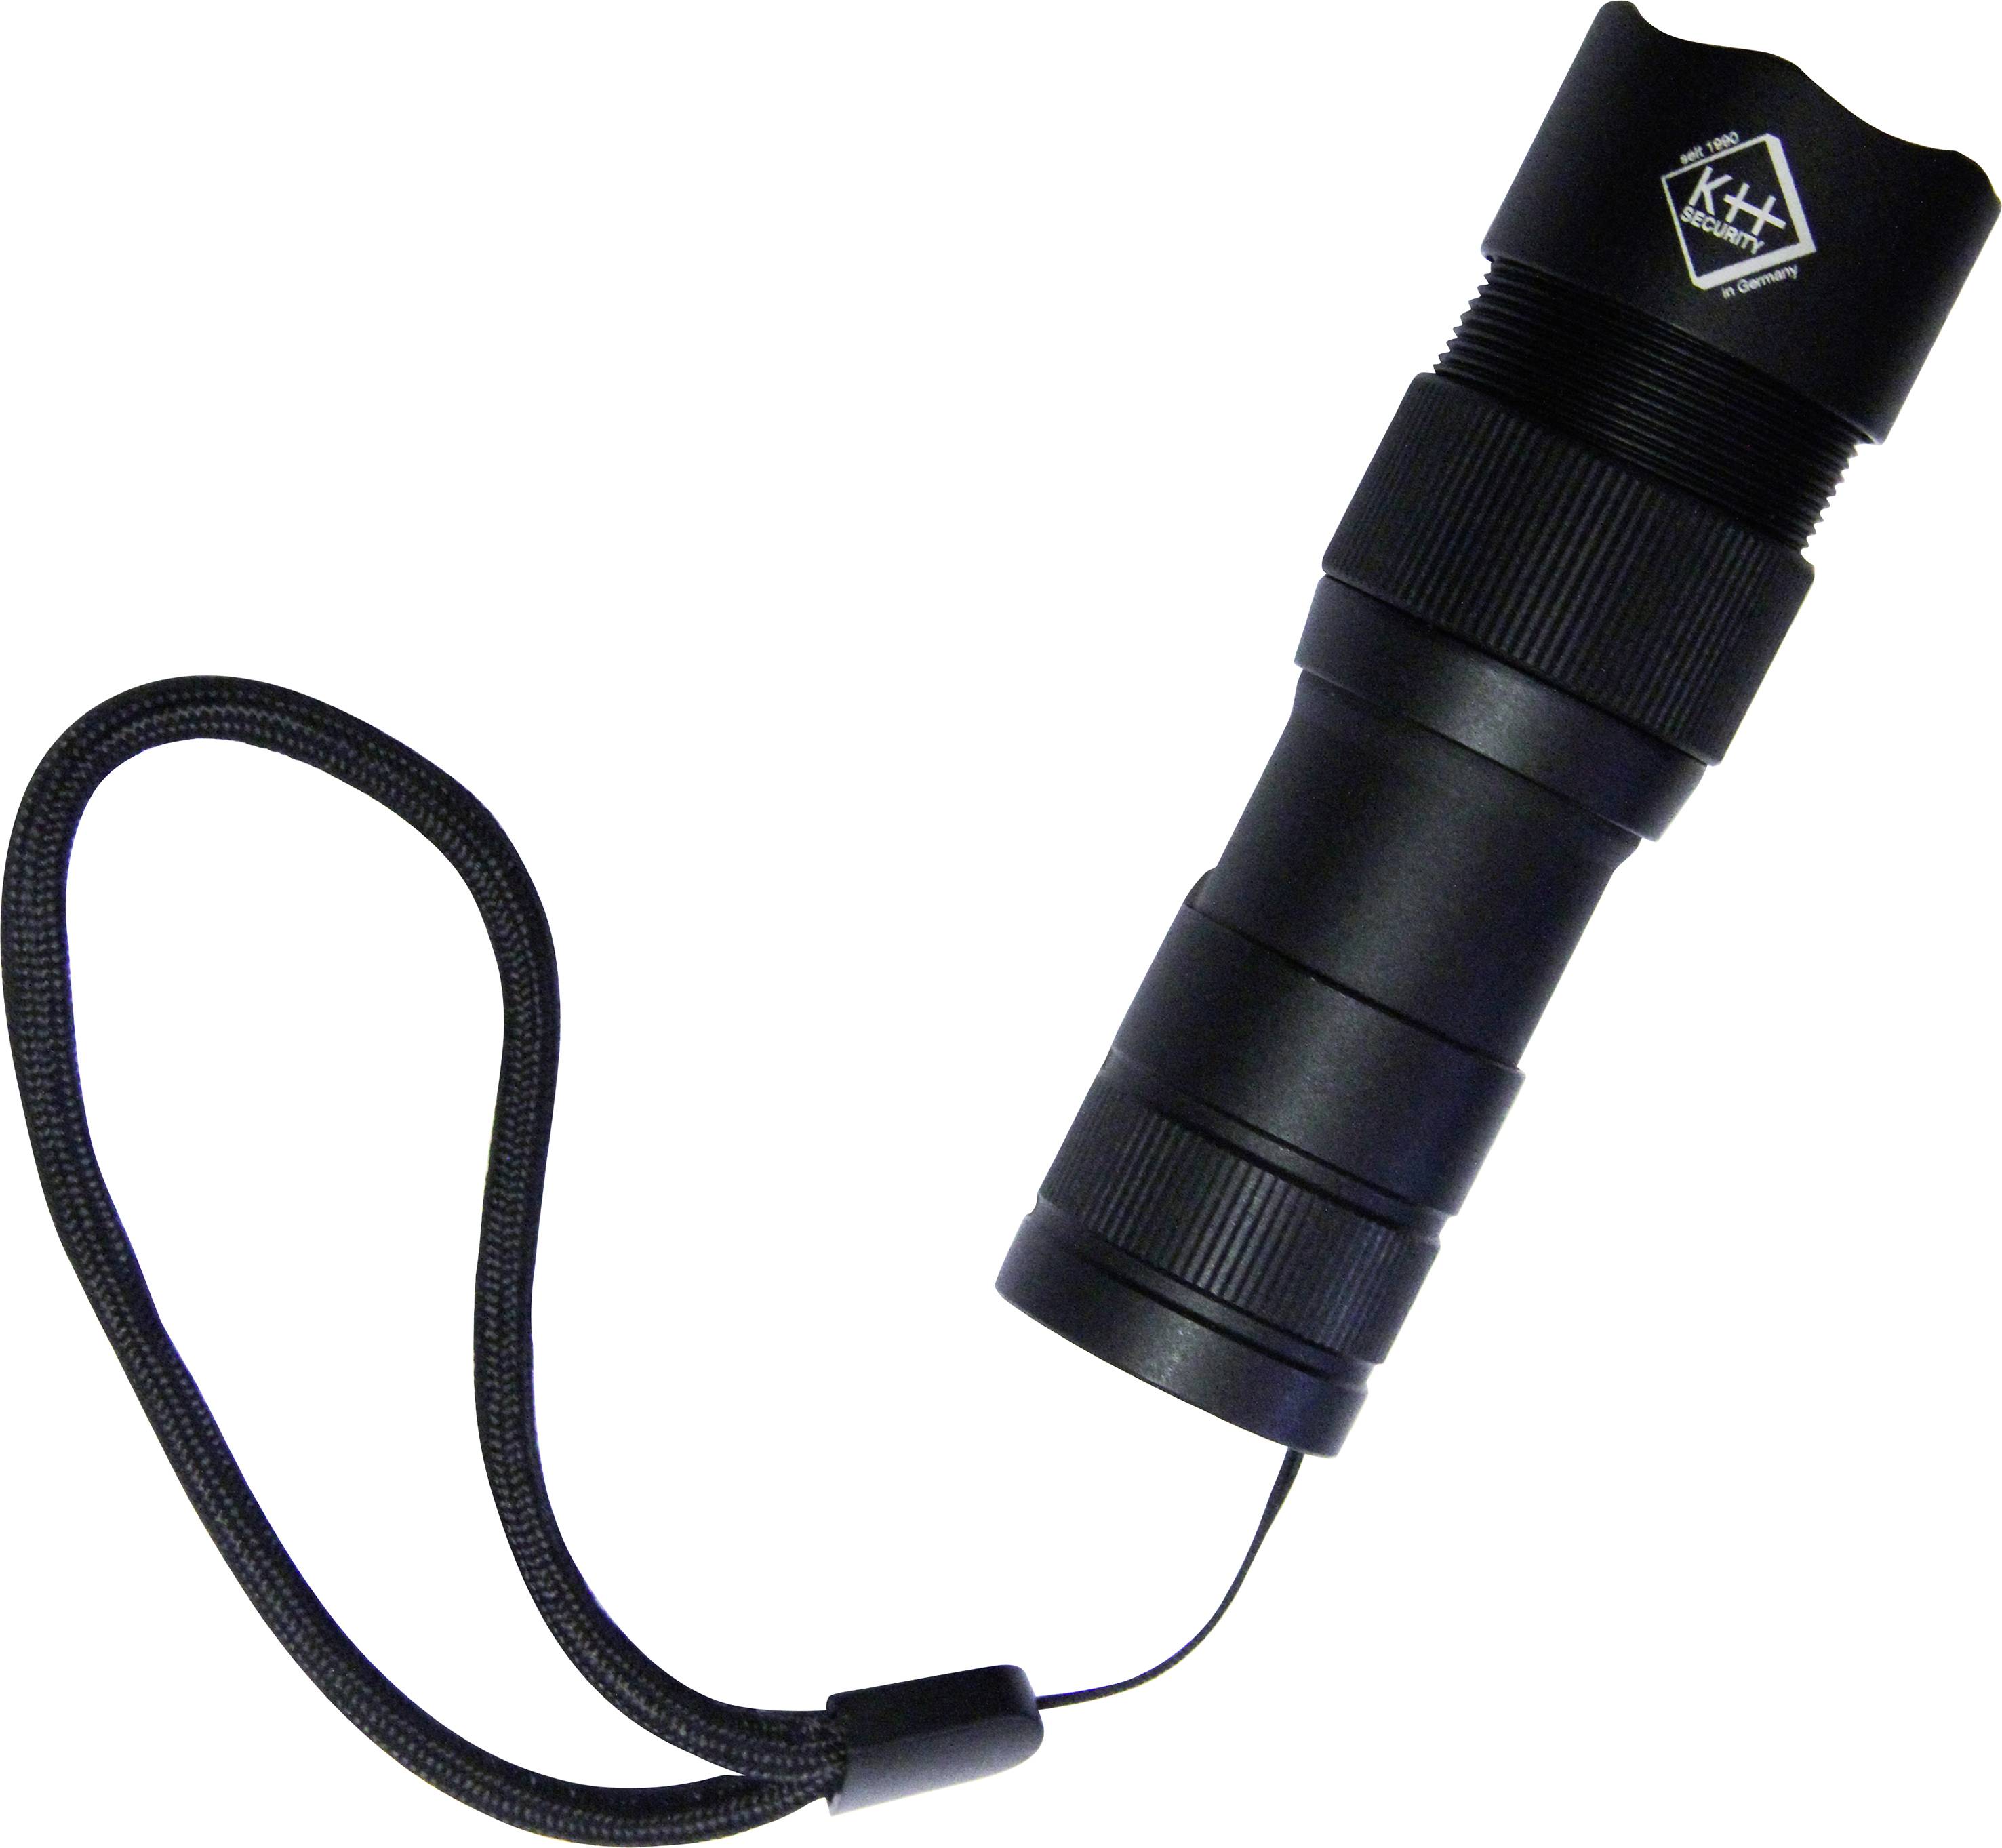 KH SECURITY kh-security Pro Alarm Taschenlampe mit Handschlaufe, mit USB-Schnittstelle akkubetrieben